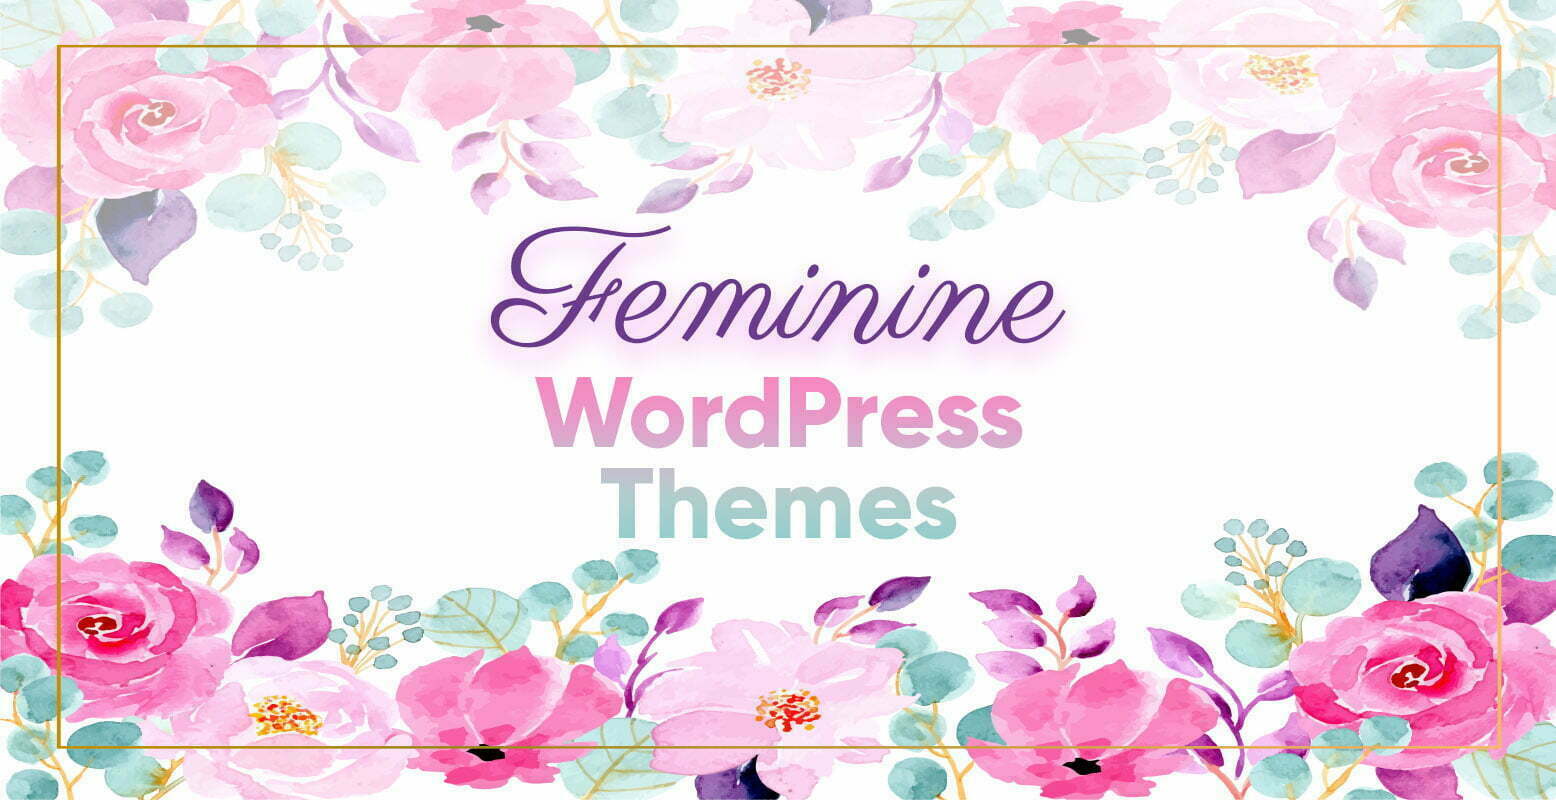 Feminine Blog Themes